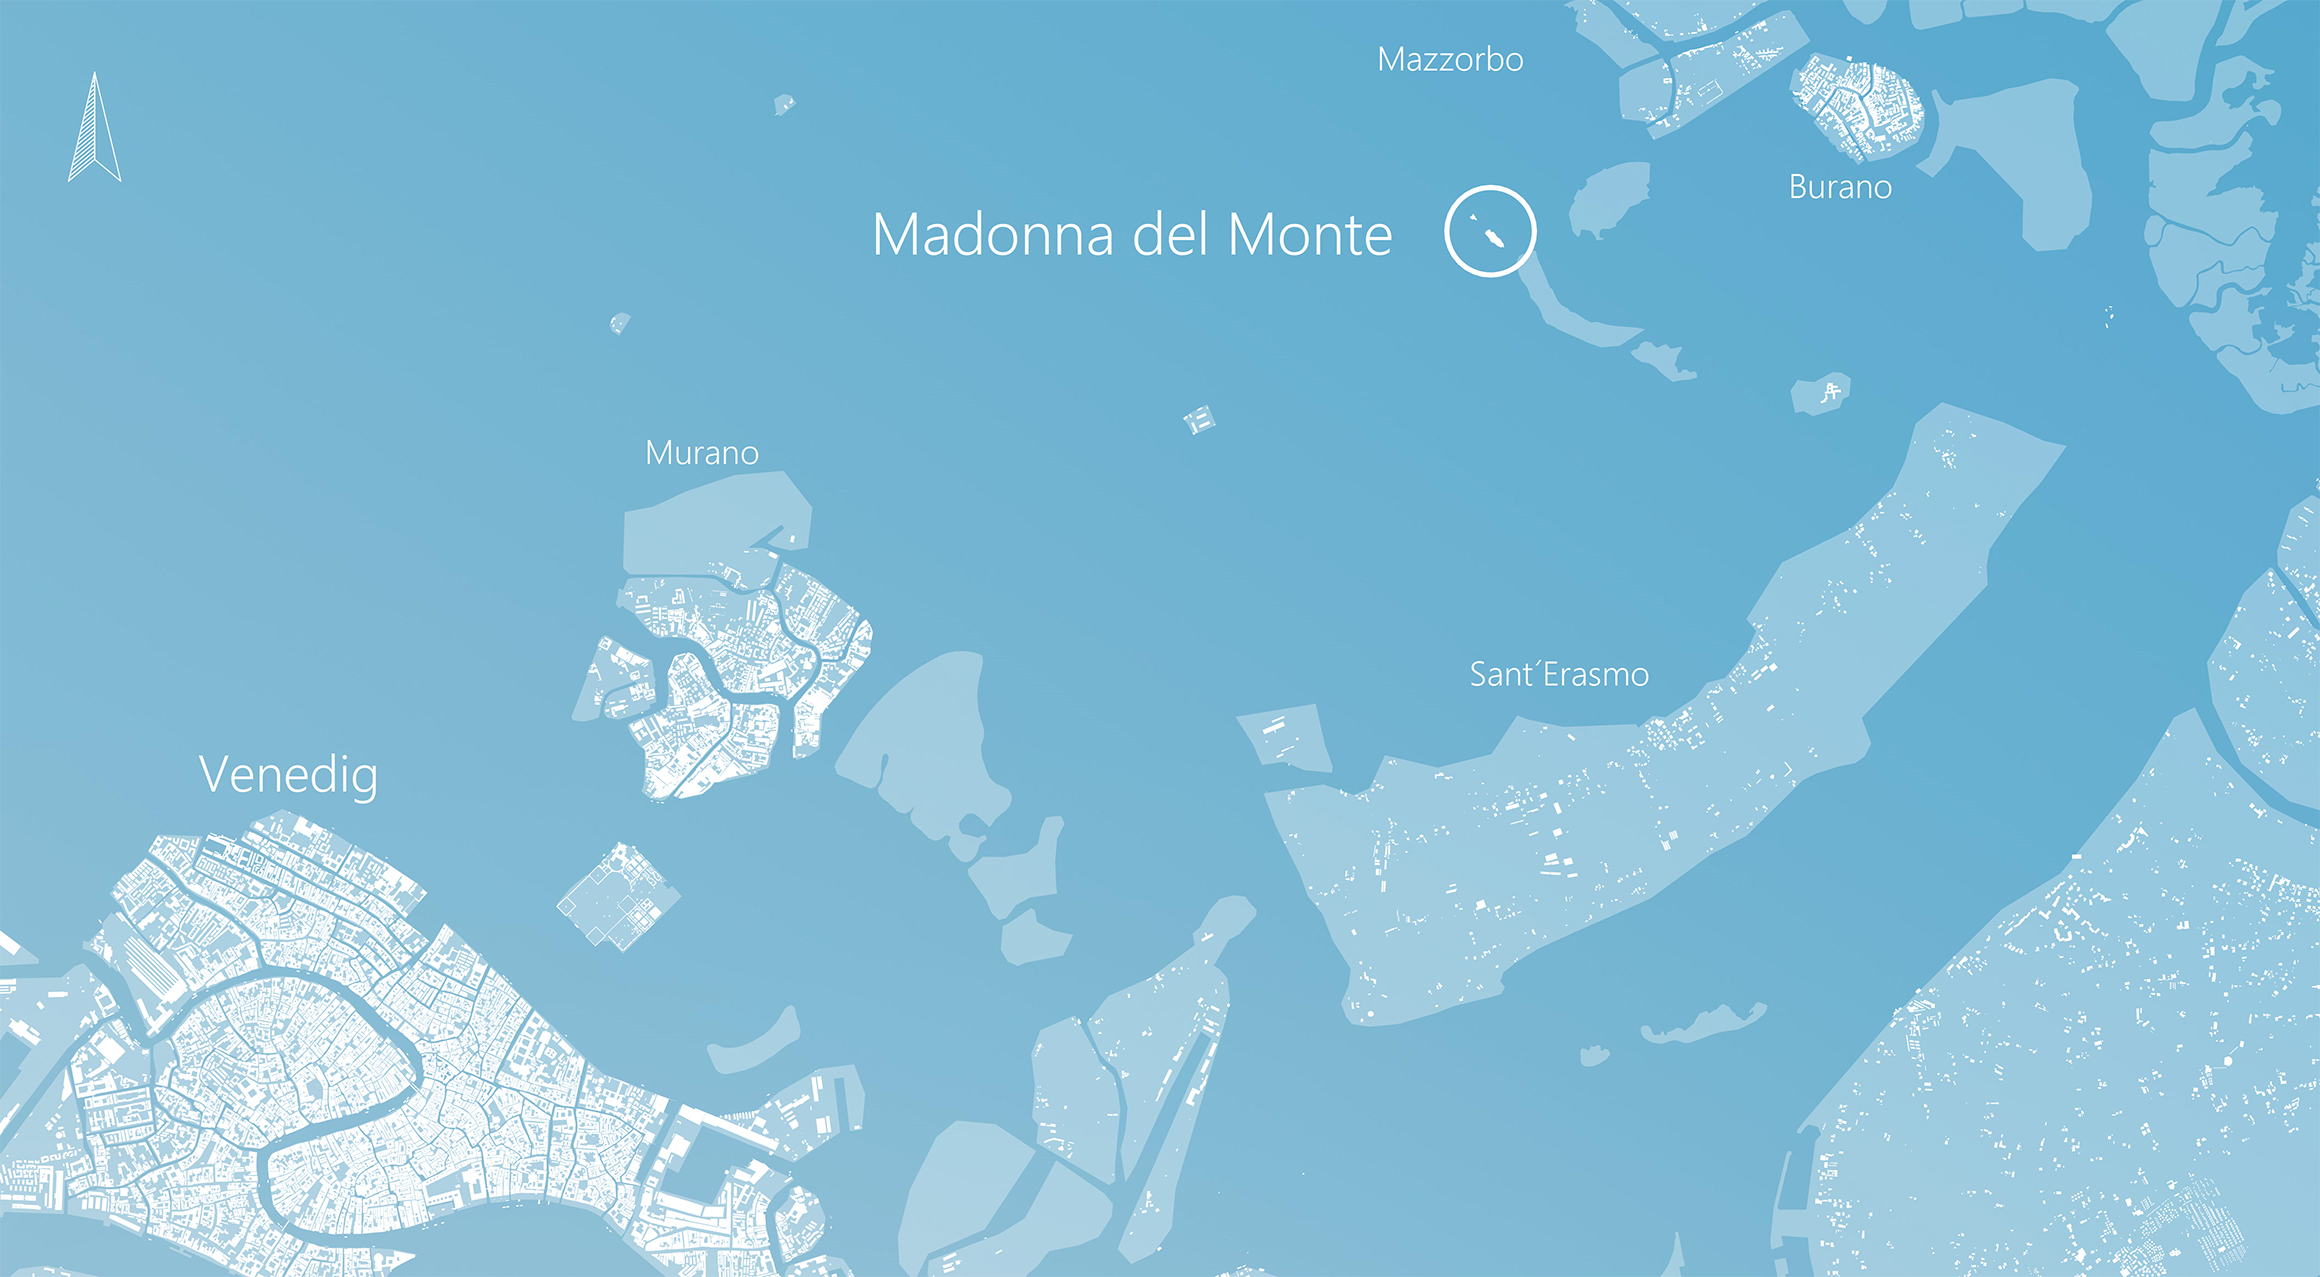 eine mit archicad erstellte karte, die den standort von madonna del mare zeigt.